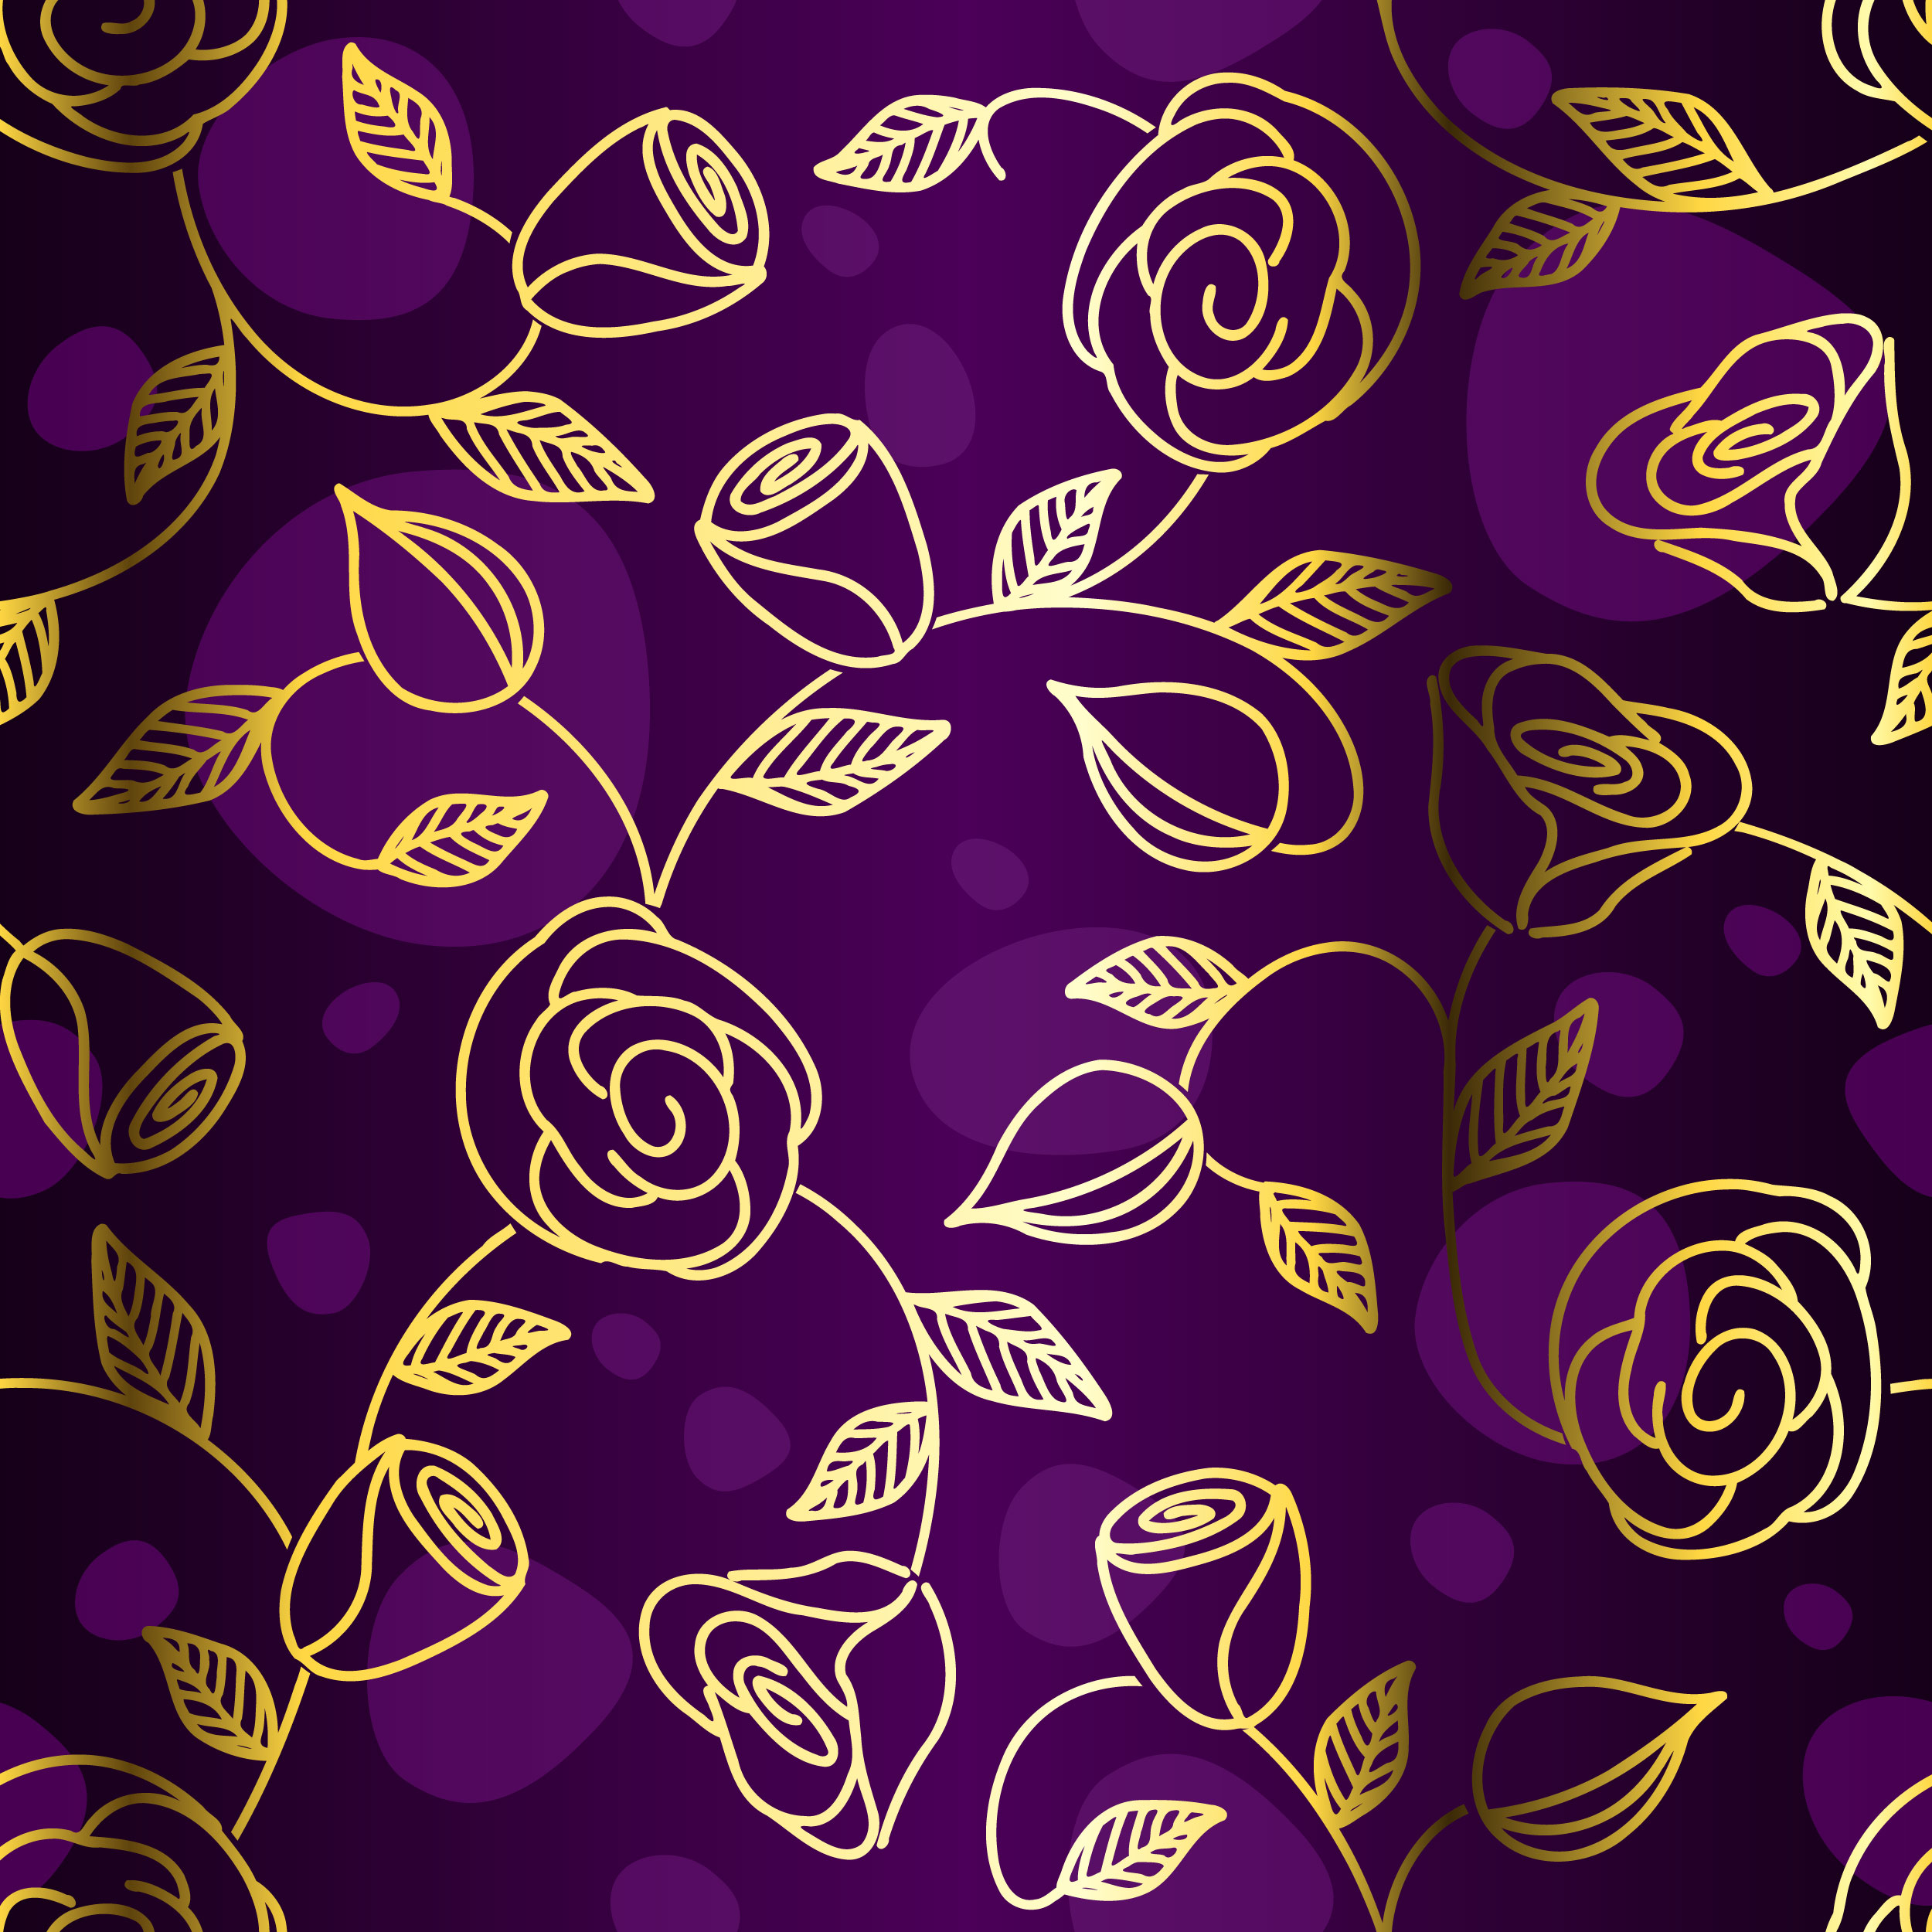 バラの画像 イラスト 壁紙 背景用 No 587 バラ 紫 ゴールドライン